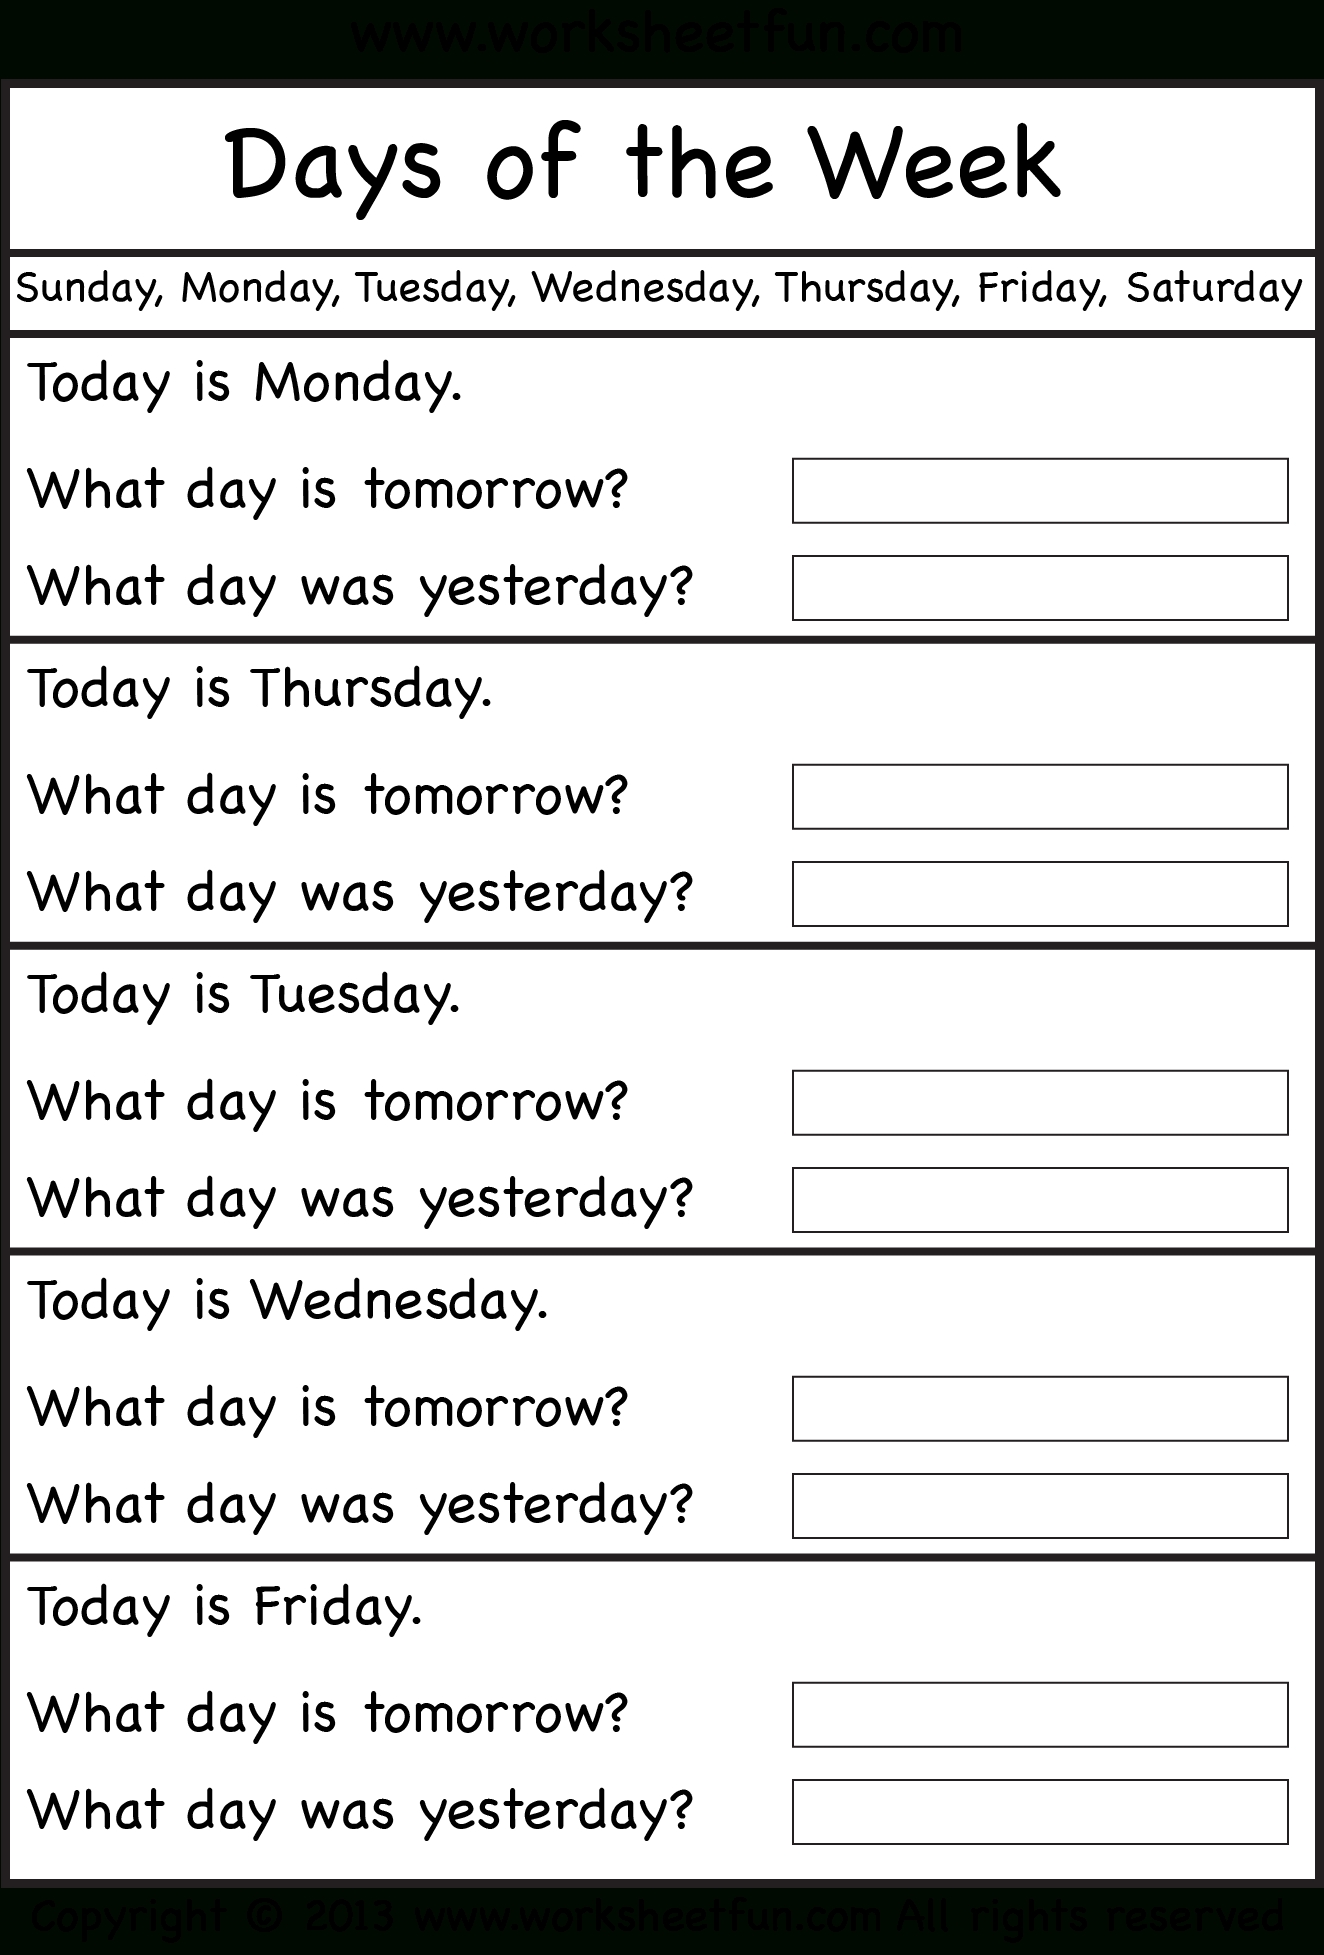 Days Of The Week - Worksheet / Free Printable Worksheets